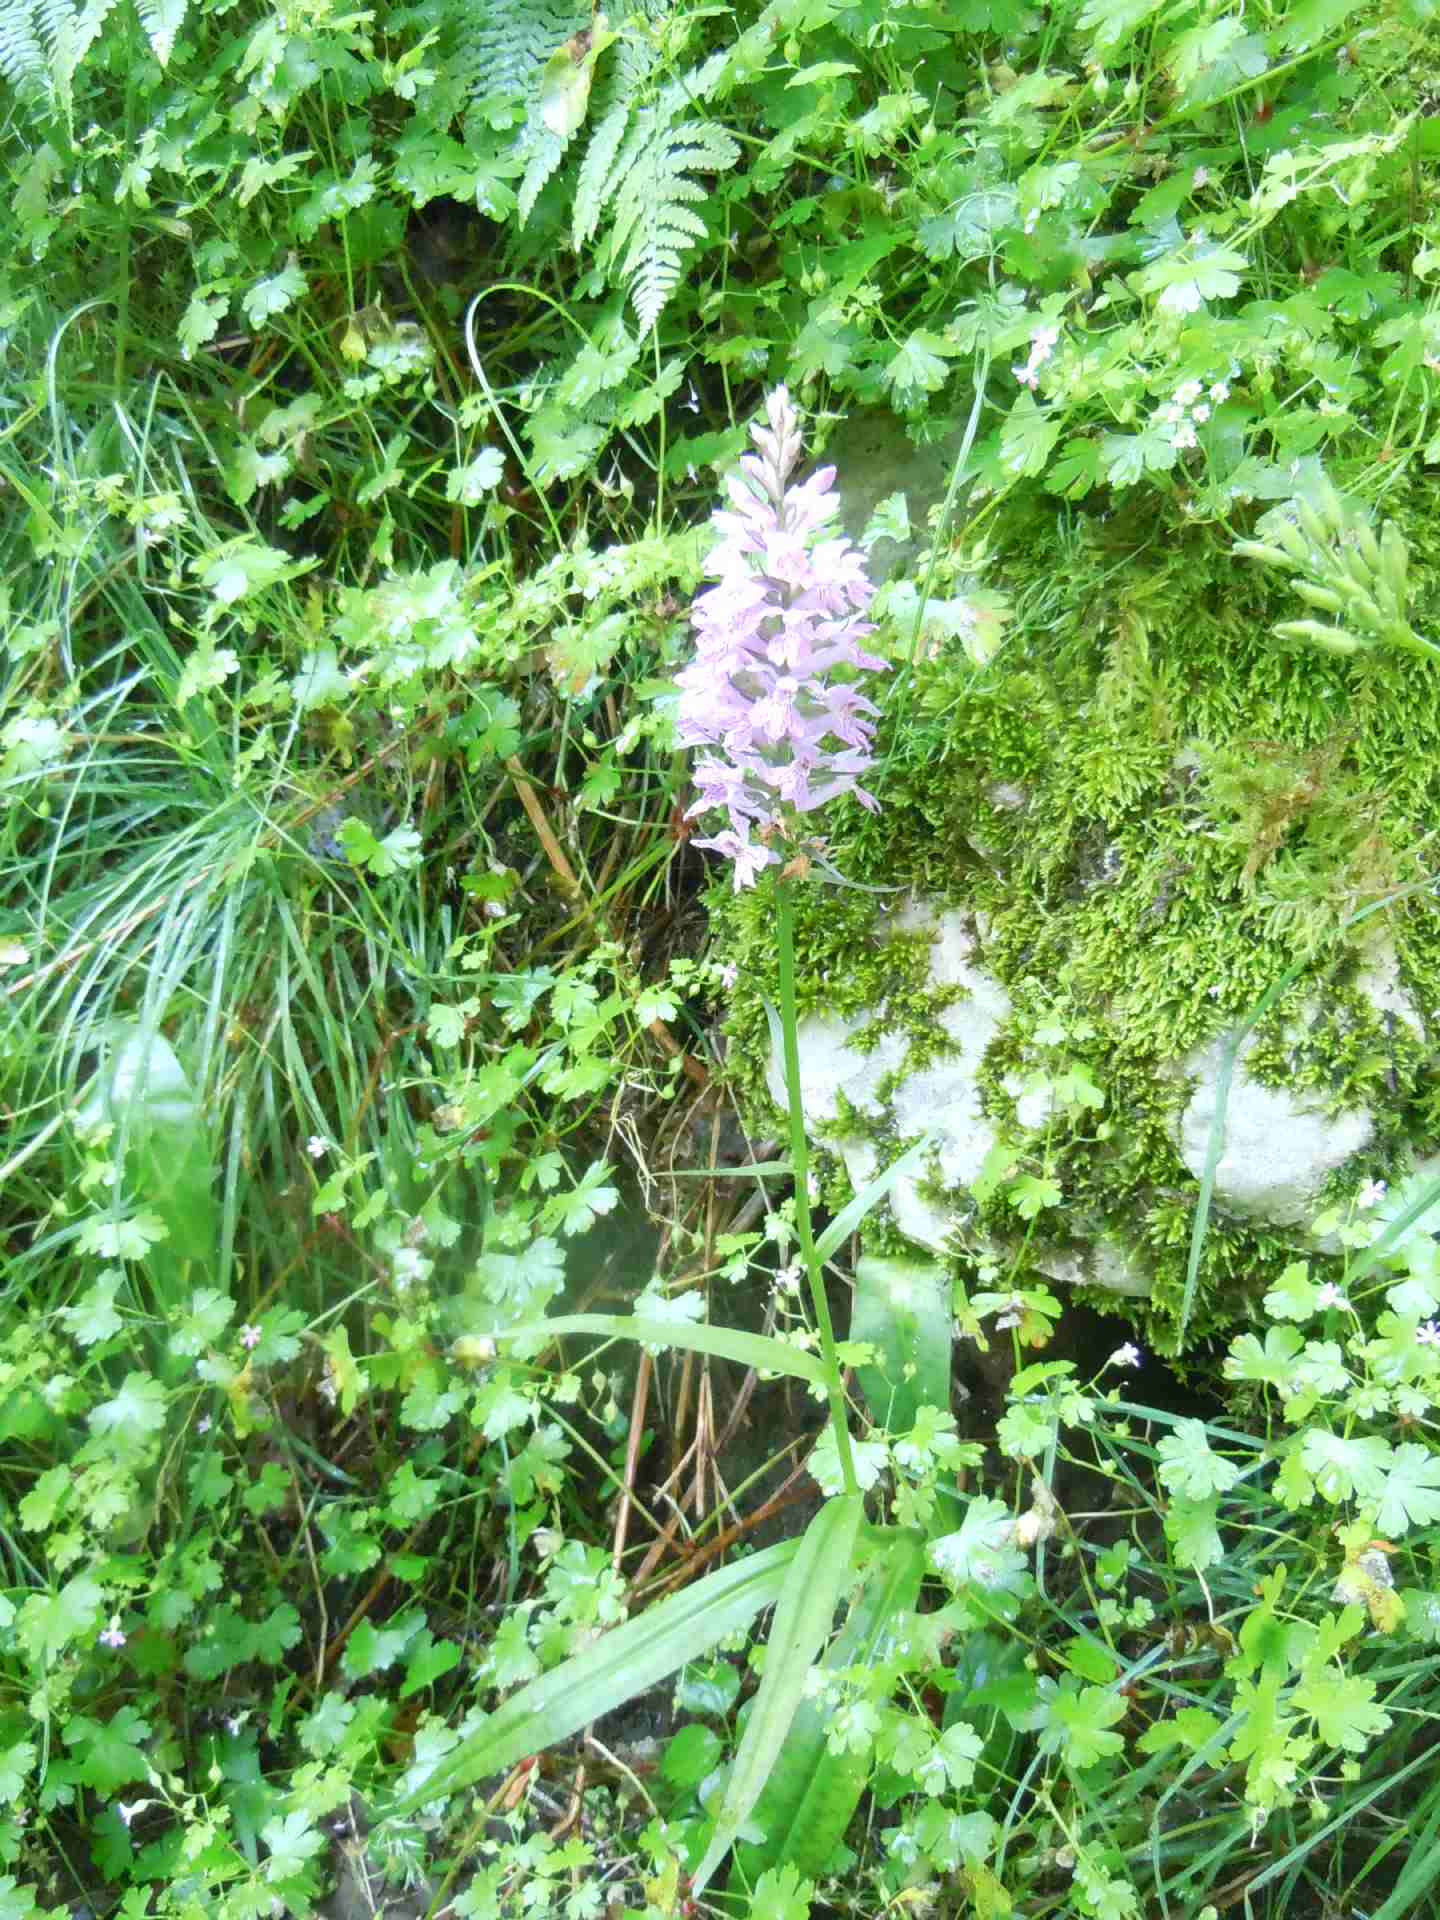 Dactylorhiza maculata subsp. fuchsii?